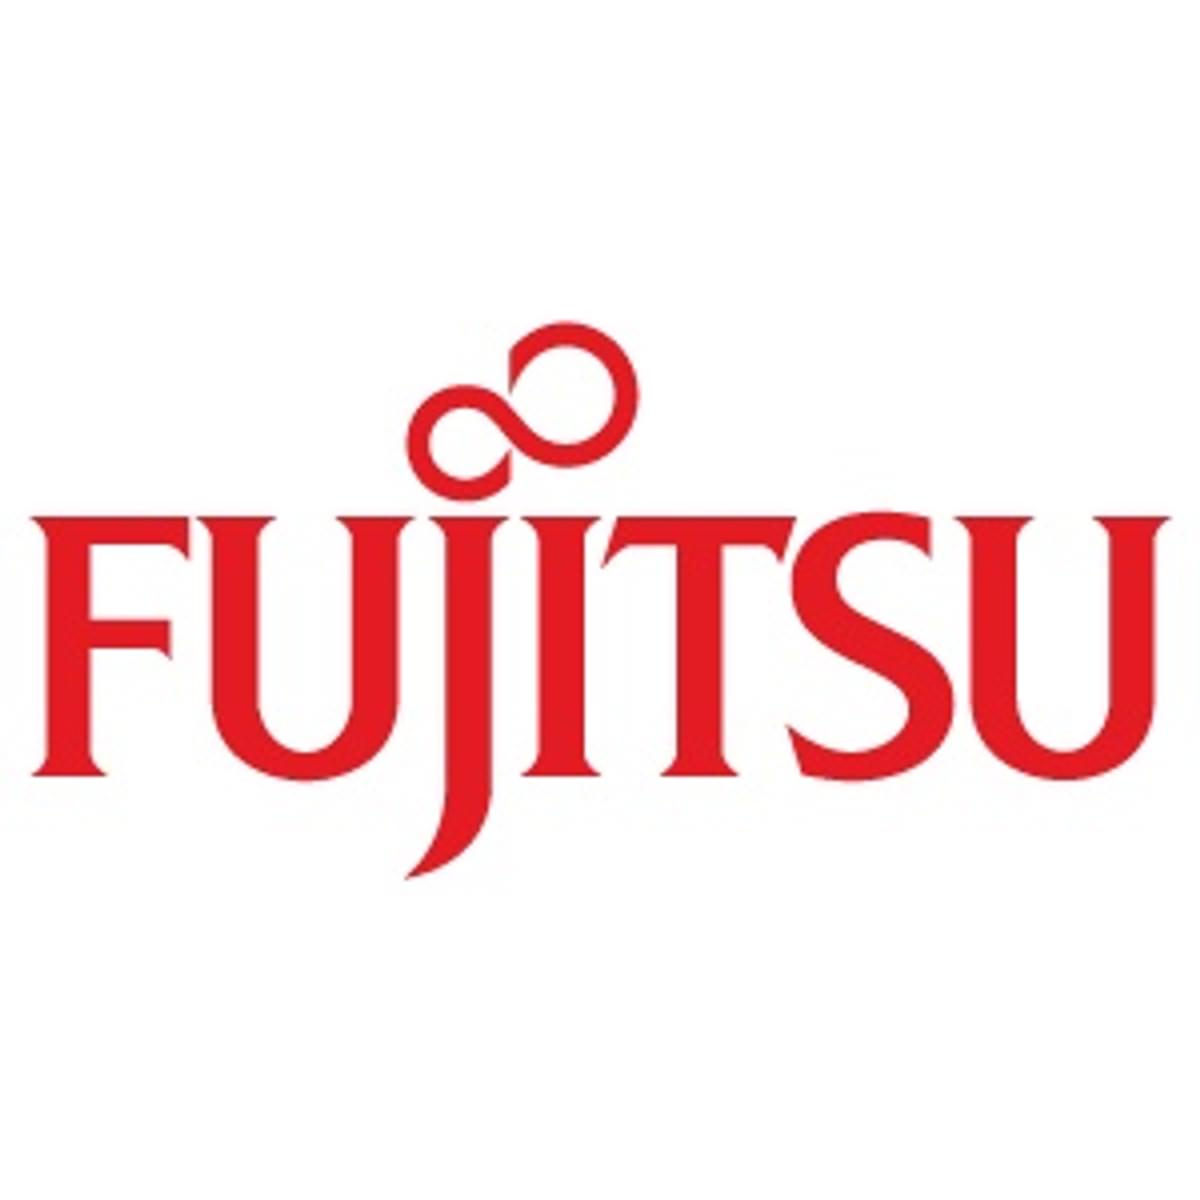 Fujitsu Nederland reikt Channel Awards uit image